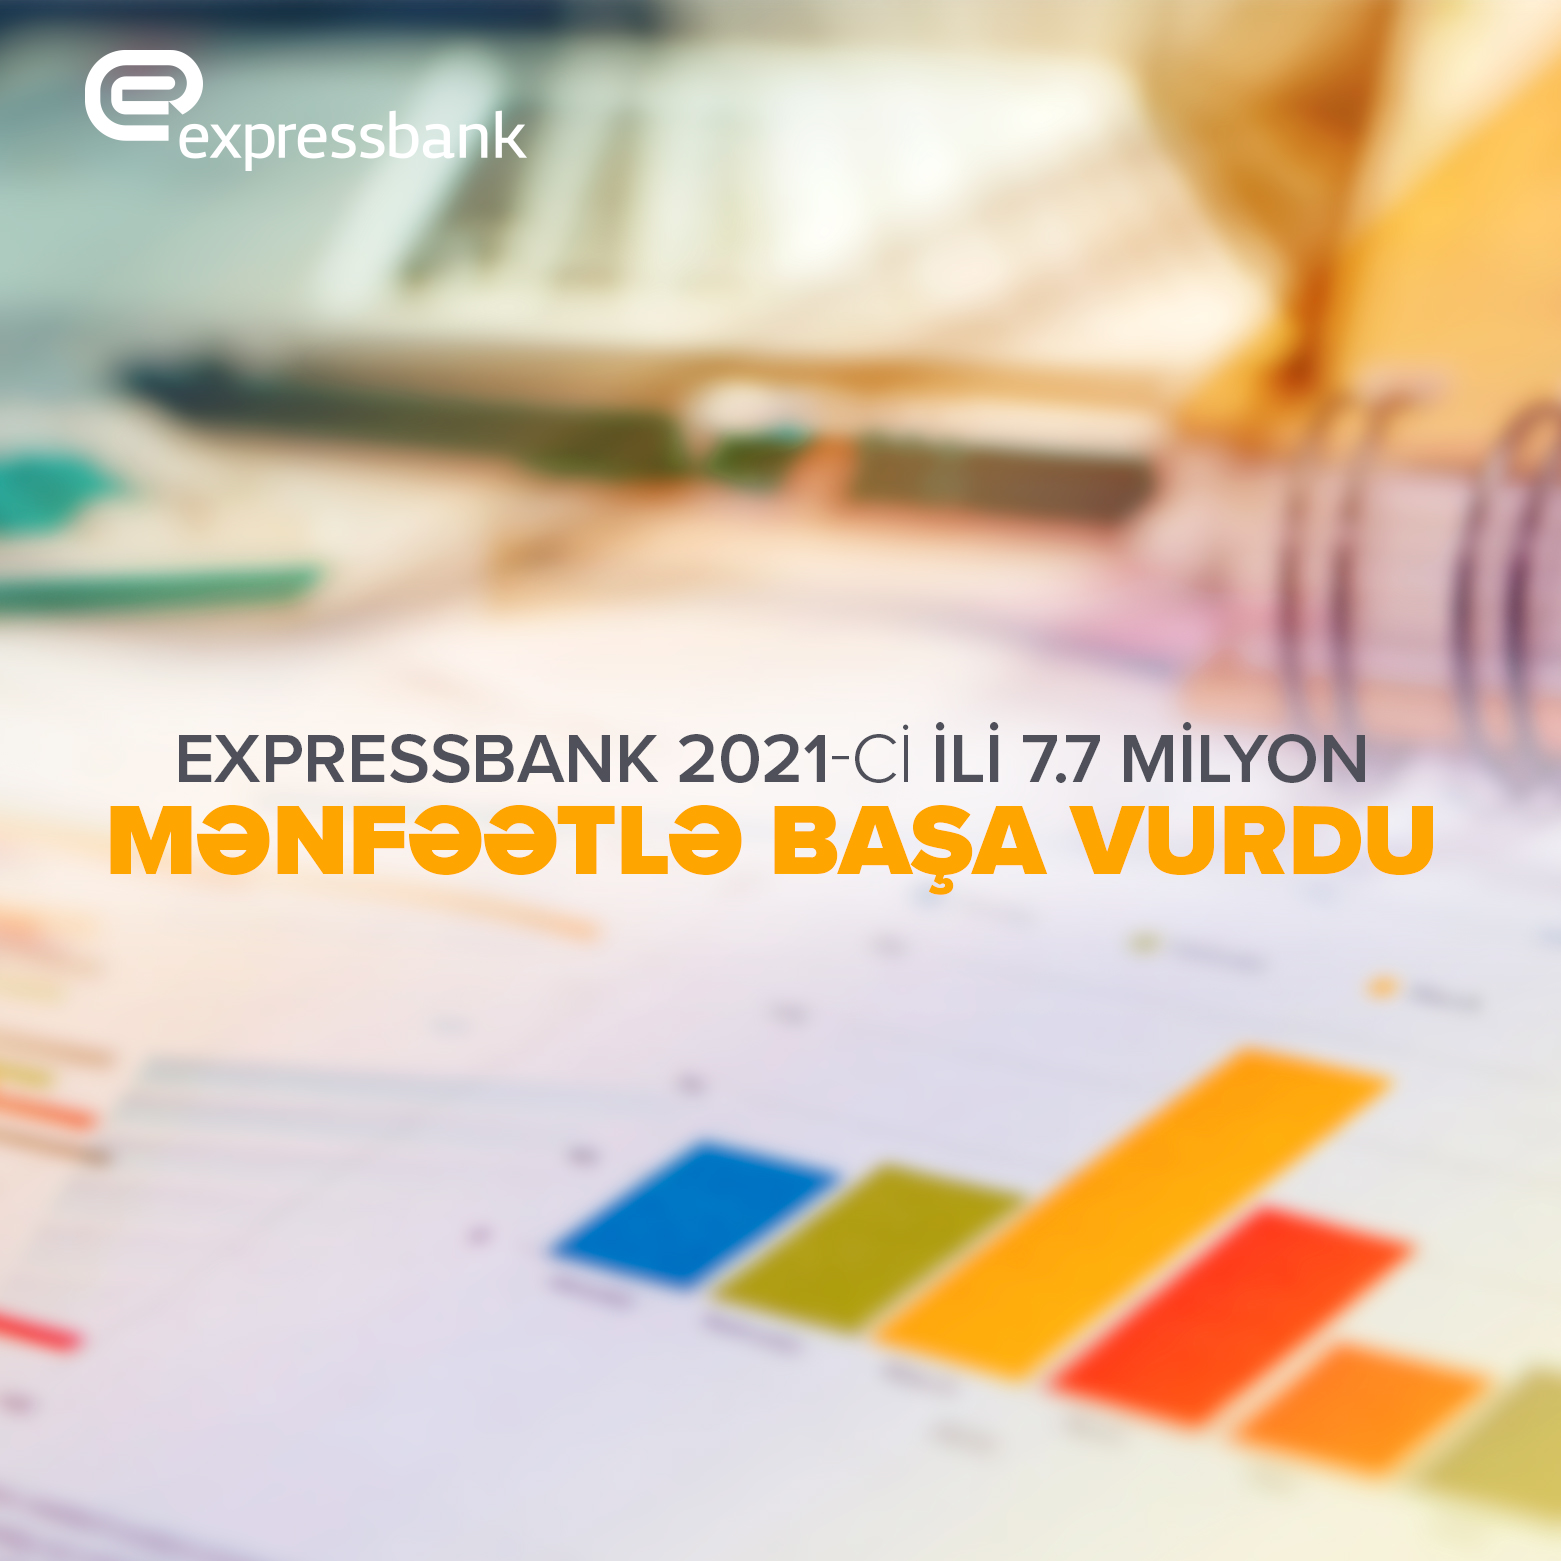 Expressbank ötən ili 7.7 milyon manat mənfəətlə başa vurub.